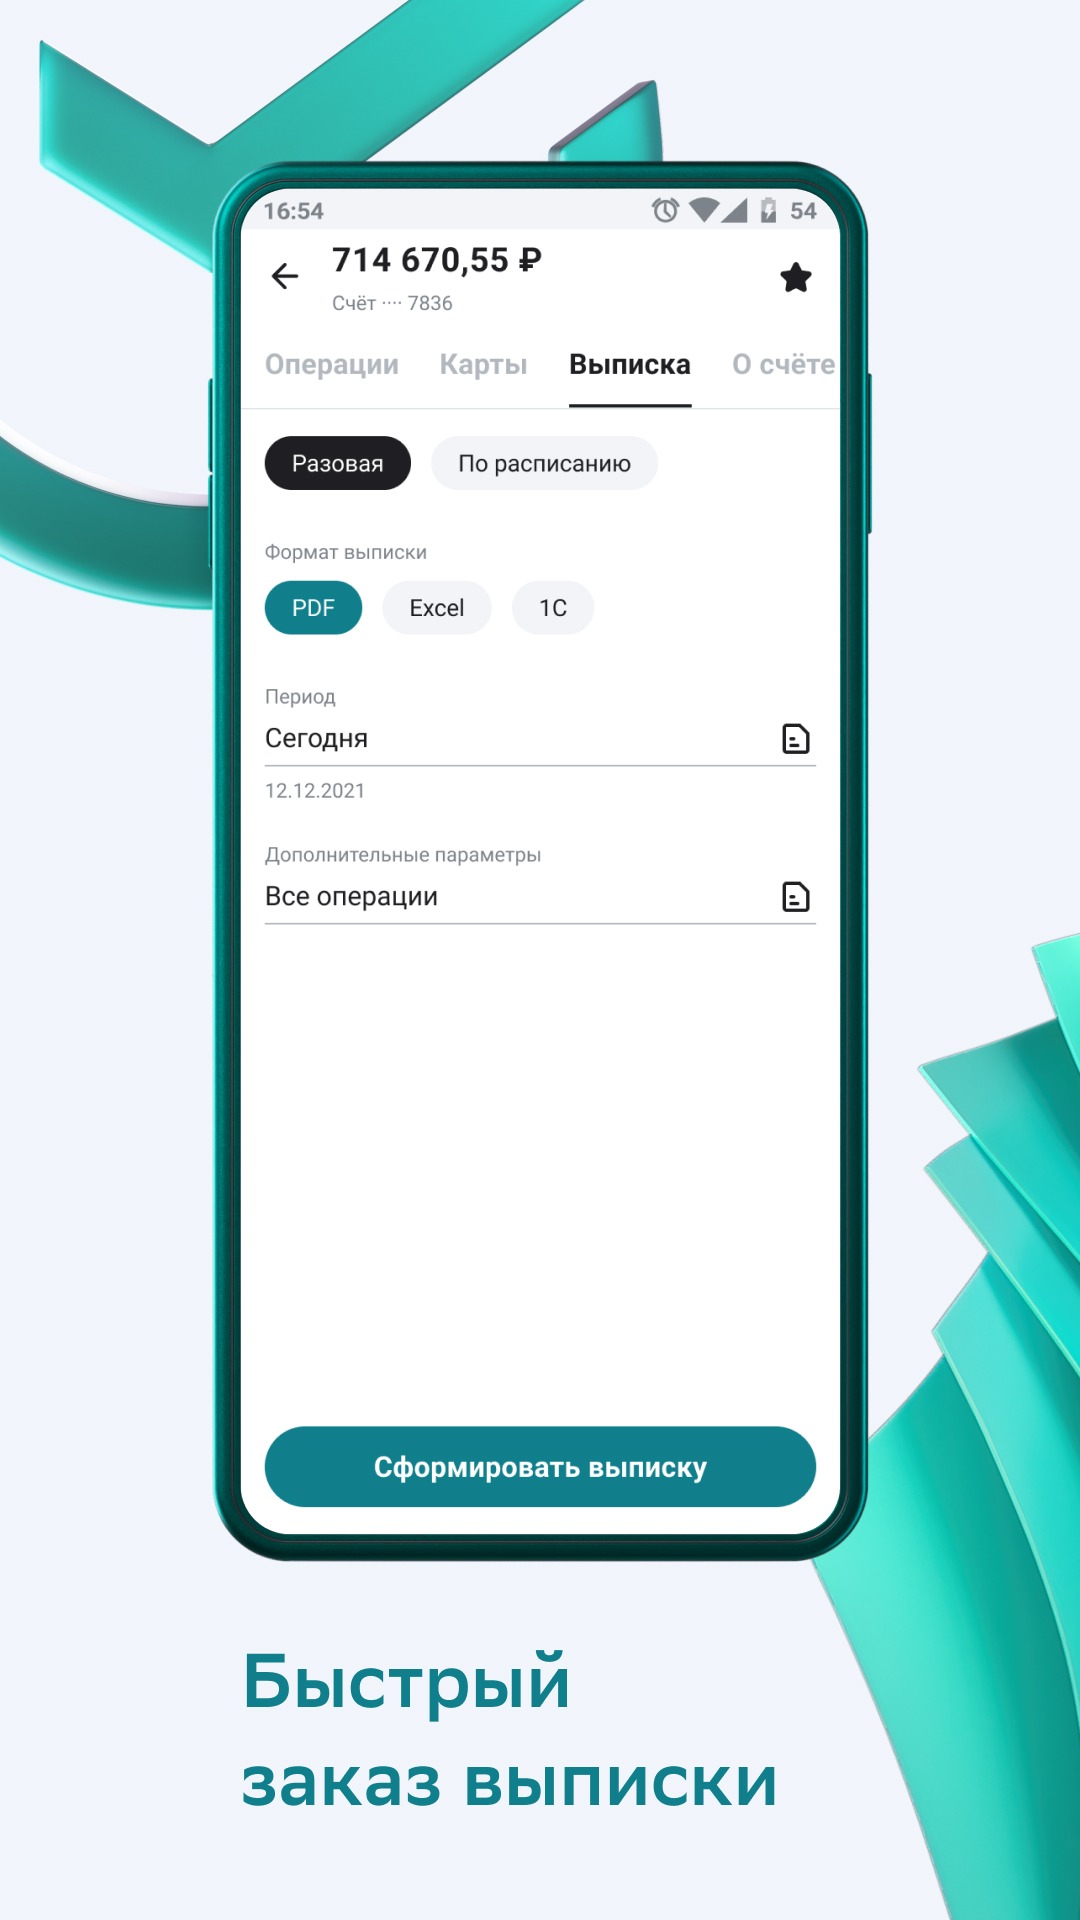 Скачать СберБизнес — приложение СберБанка на Android